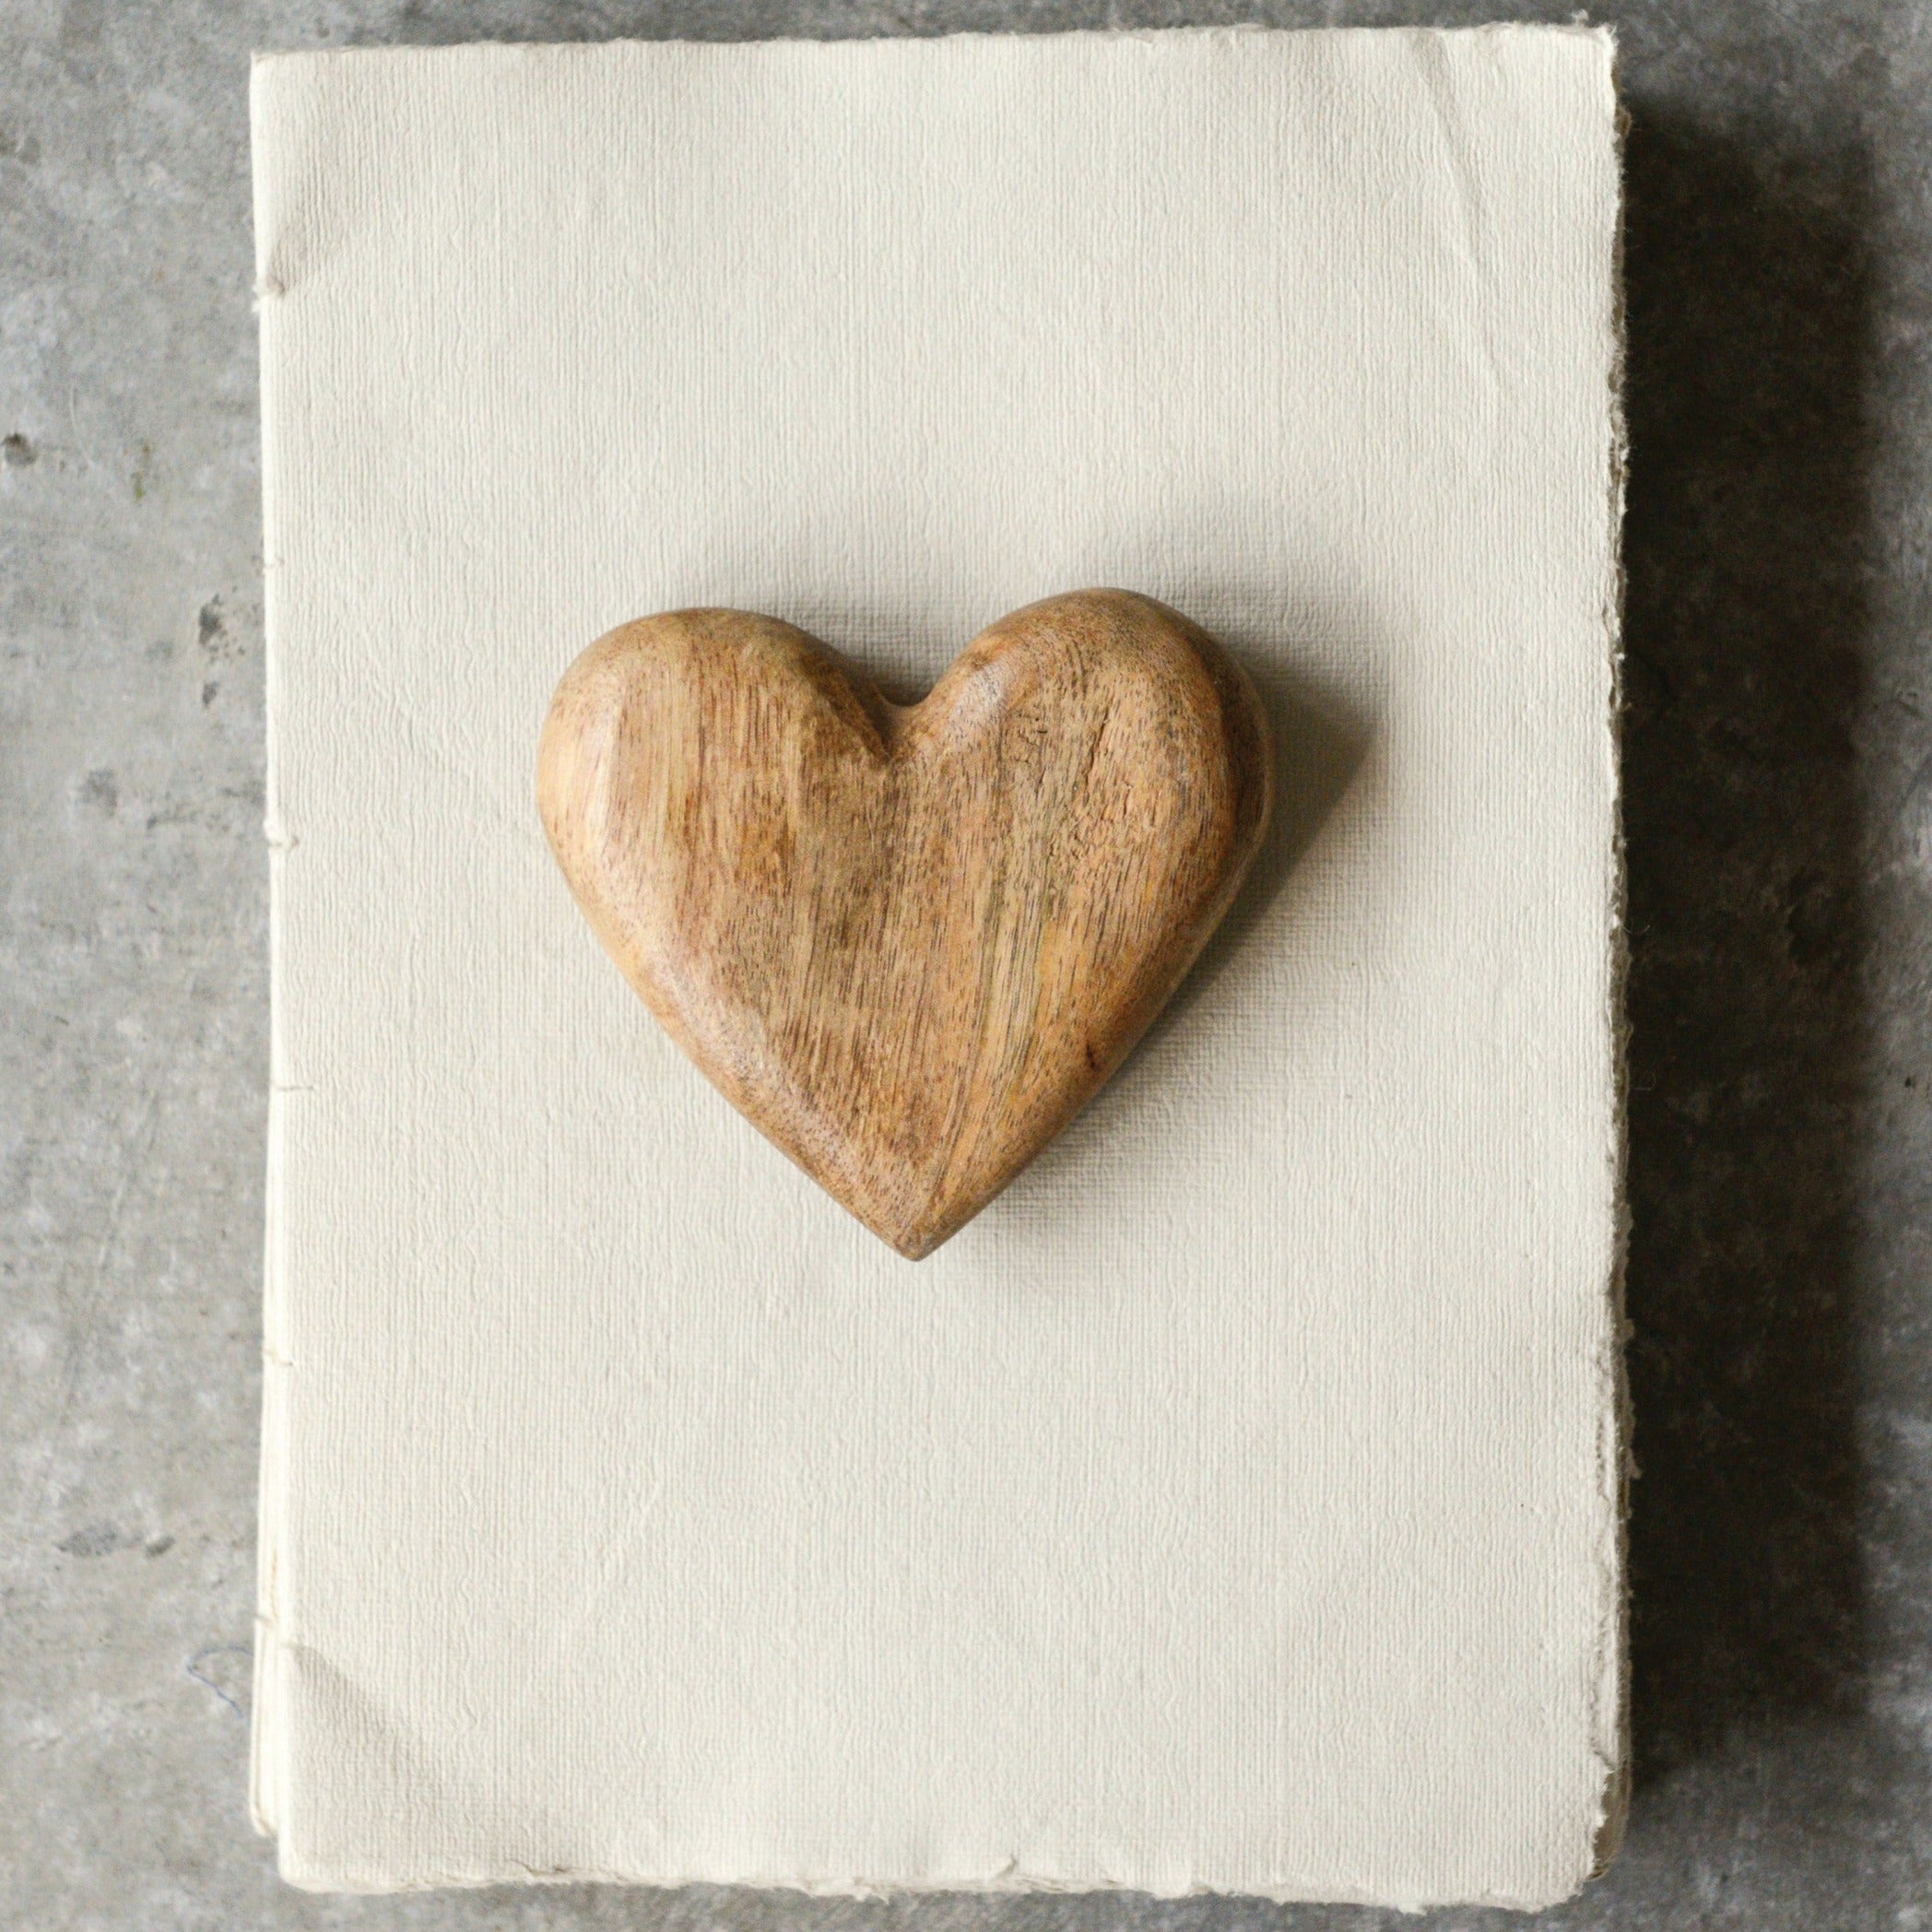 Inspirational Mango Wood Heart Ornament